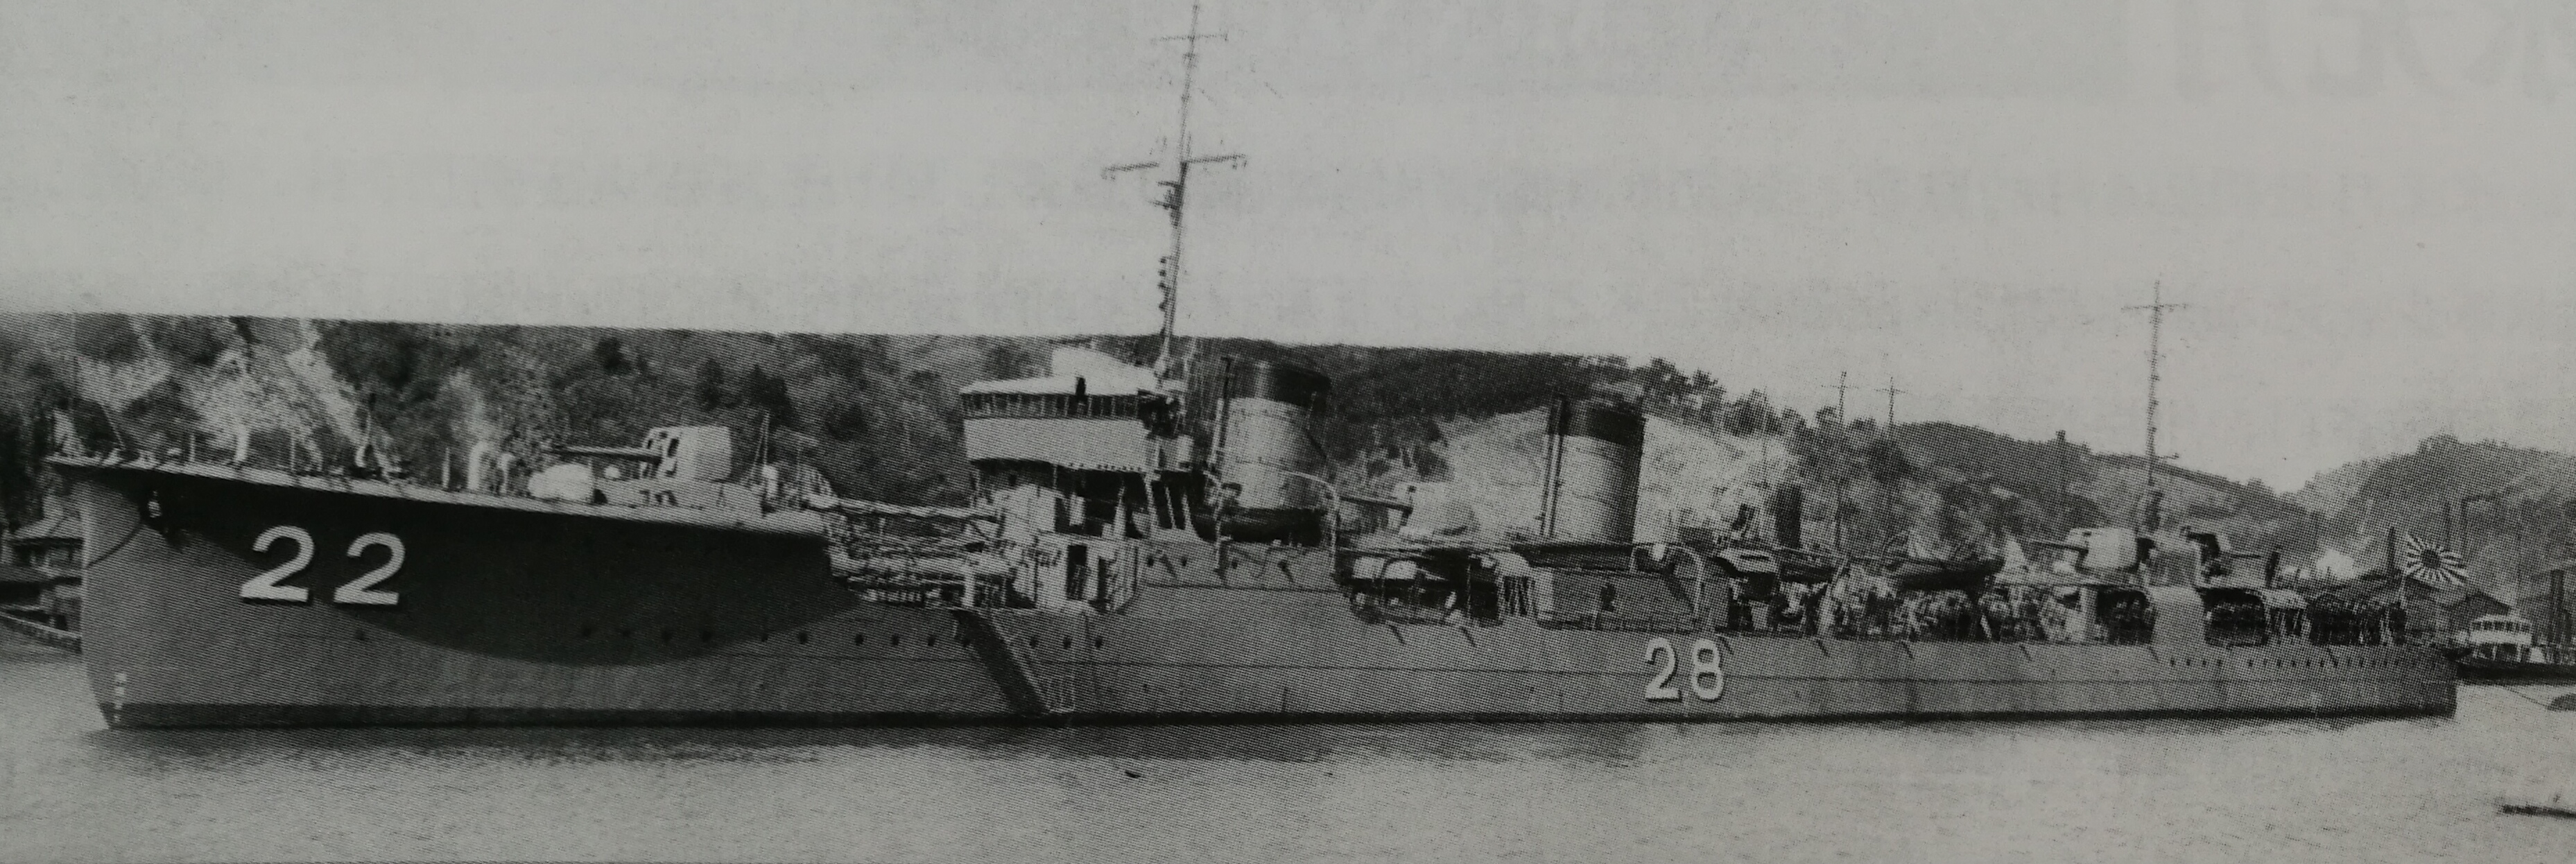 1927年3月22日在浦賀船渠竣工交接的水無月